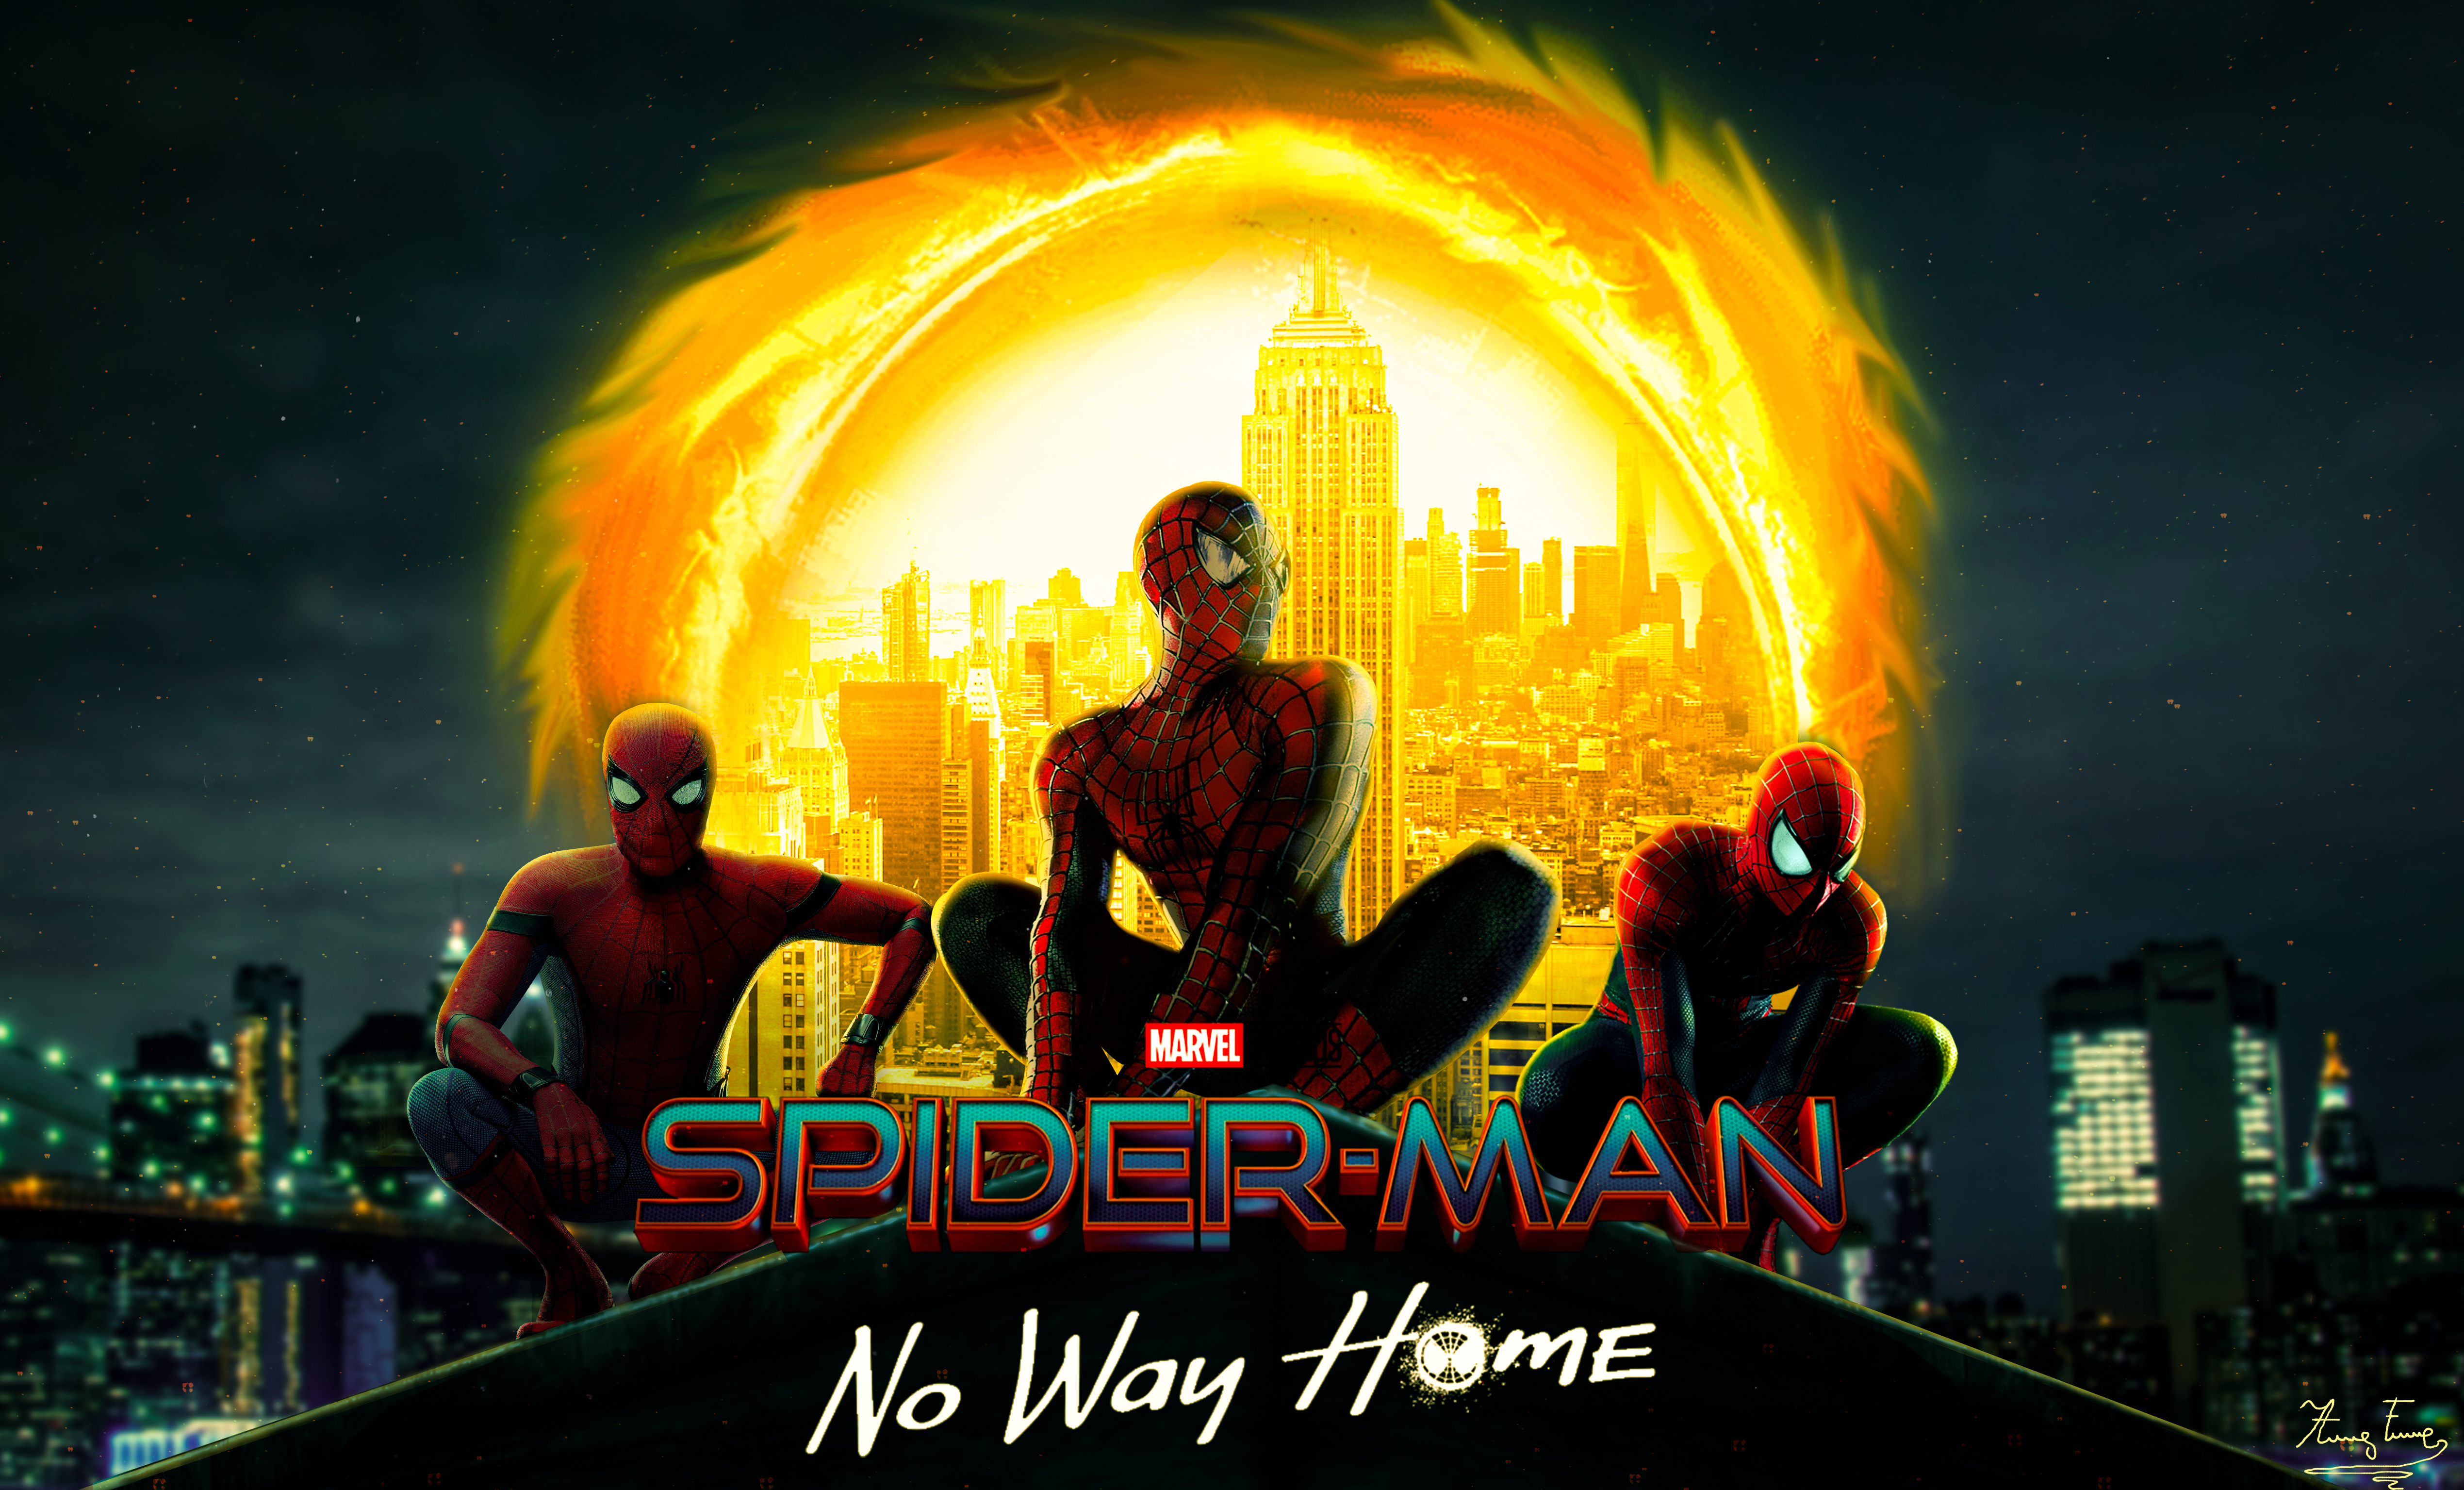 Spiderman No Way Home Spiderverse Superhero Movies Digital No Way Home Marvel Cinematic Universe Son 5078x3070